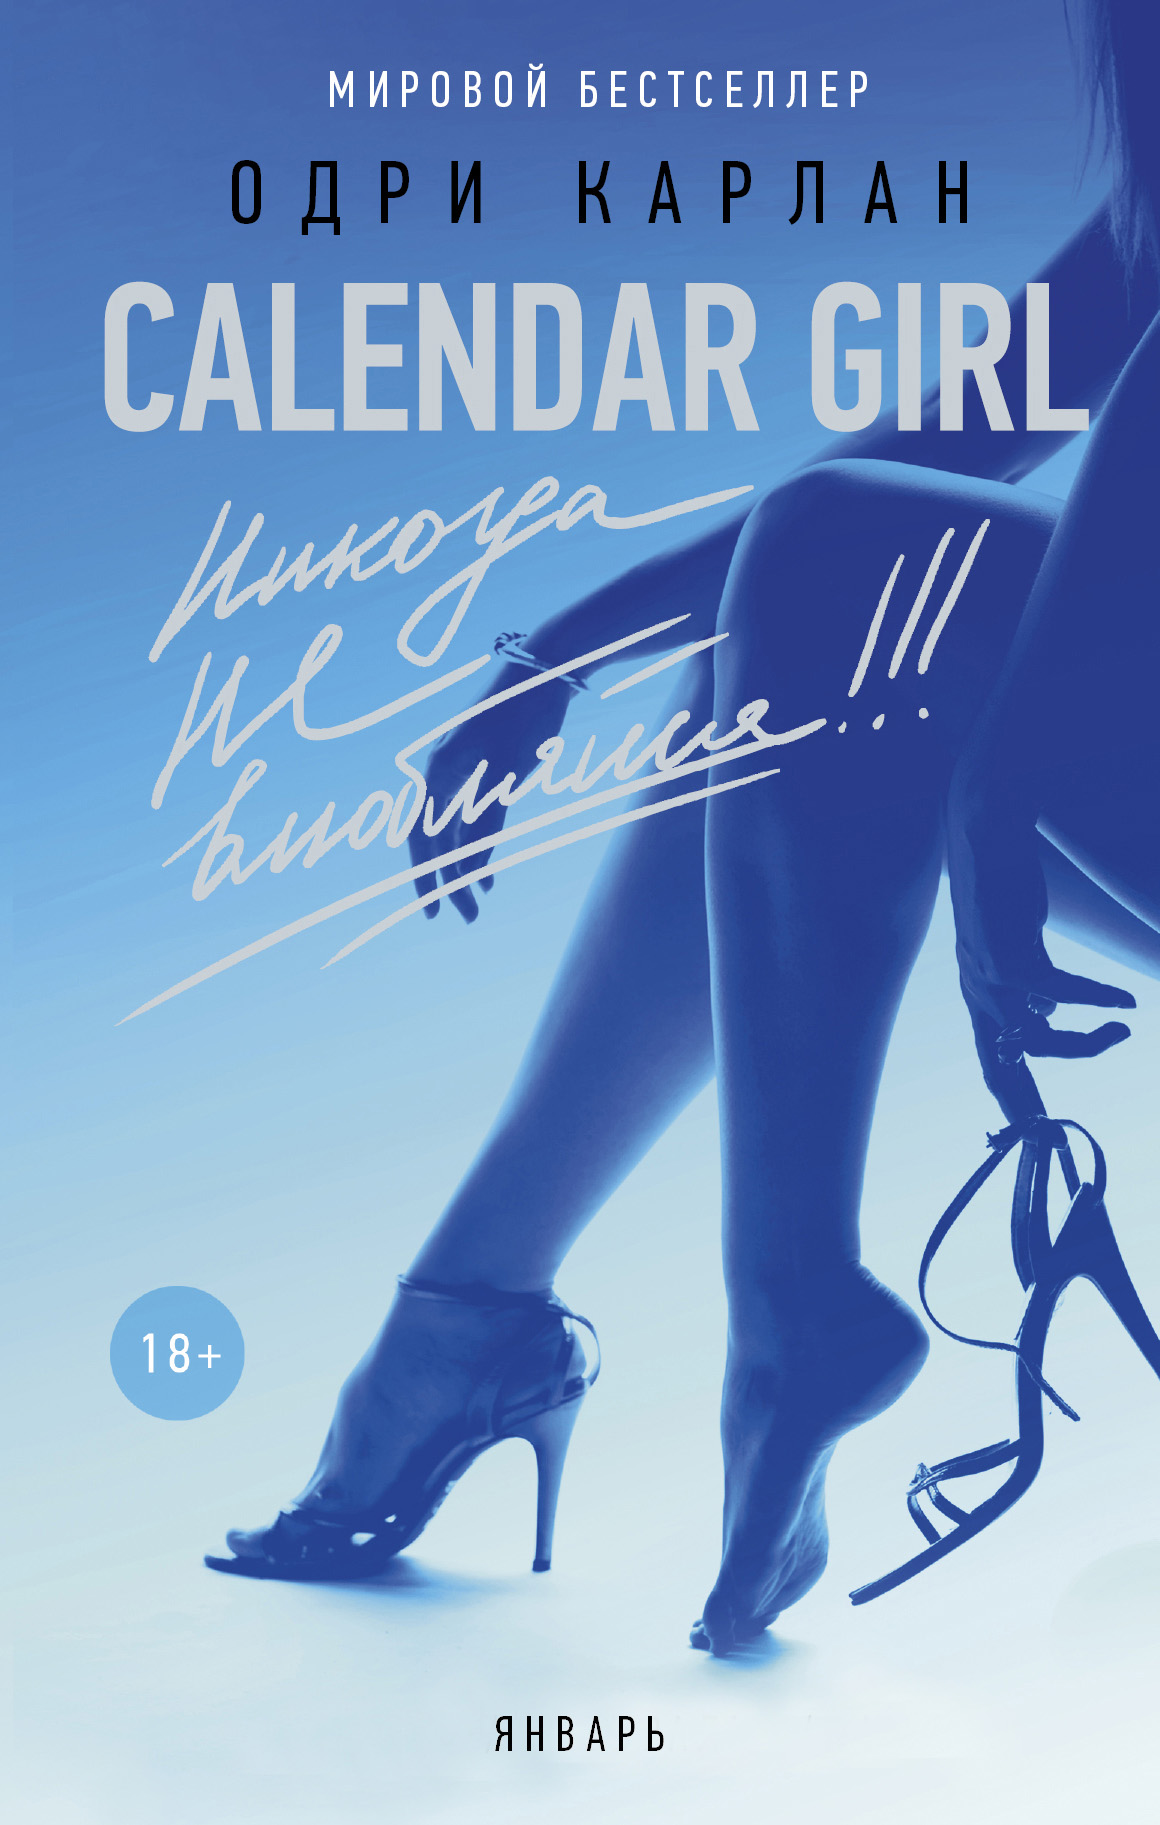 Calendar Girl.Никогда не влюбляйся! Январь